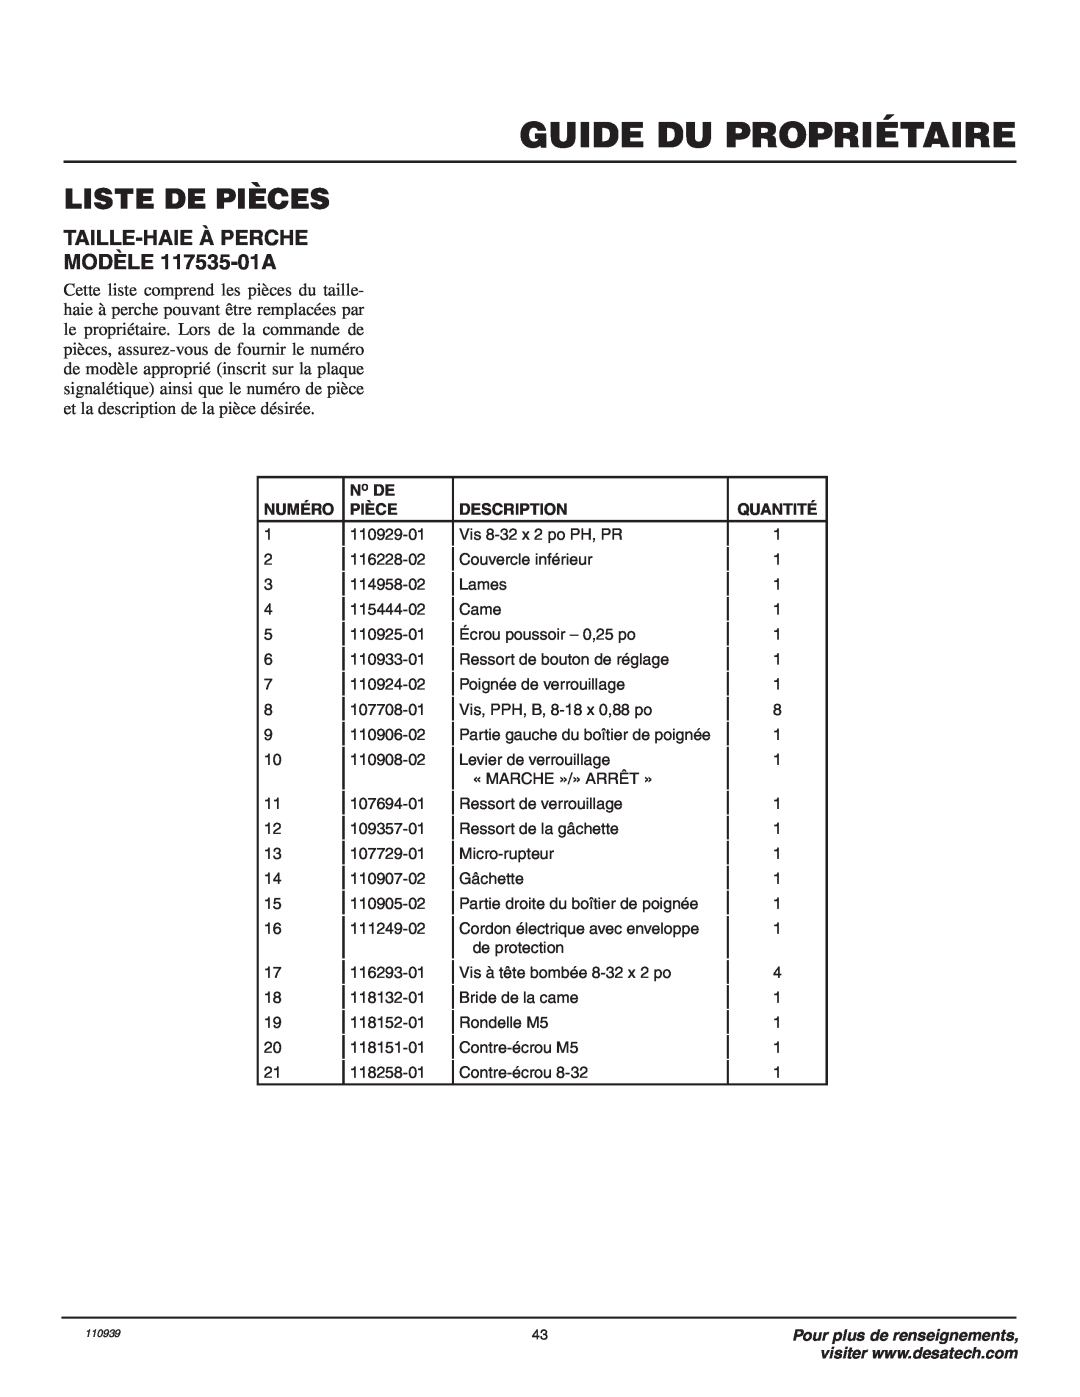 Remington Power Tools owner manual Liste De Pièces, Guide Du Propriétaire, TAILLE-HAIE À PERCHE MODÈLE 117535-01A 